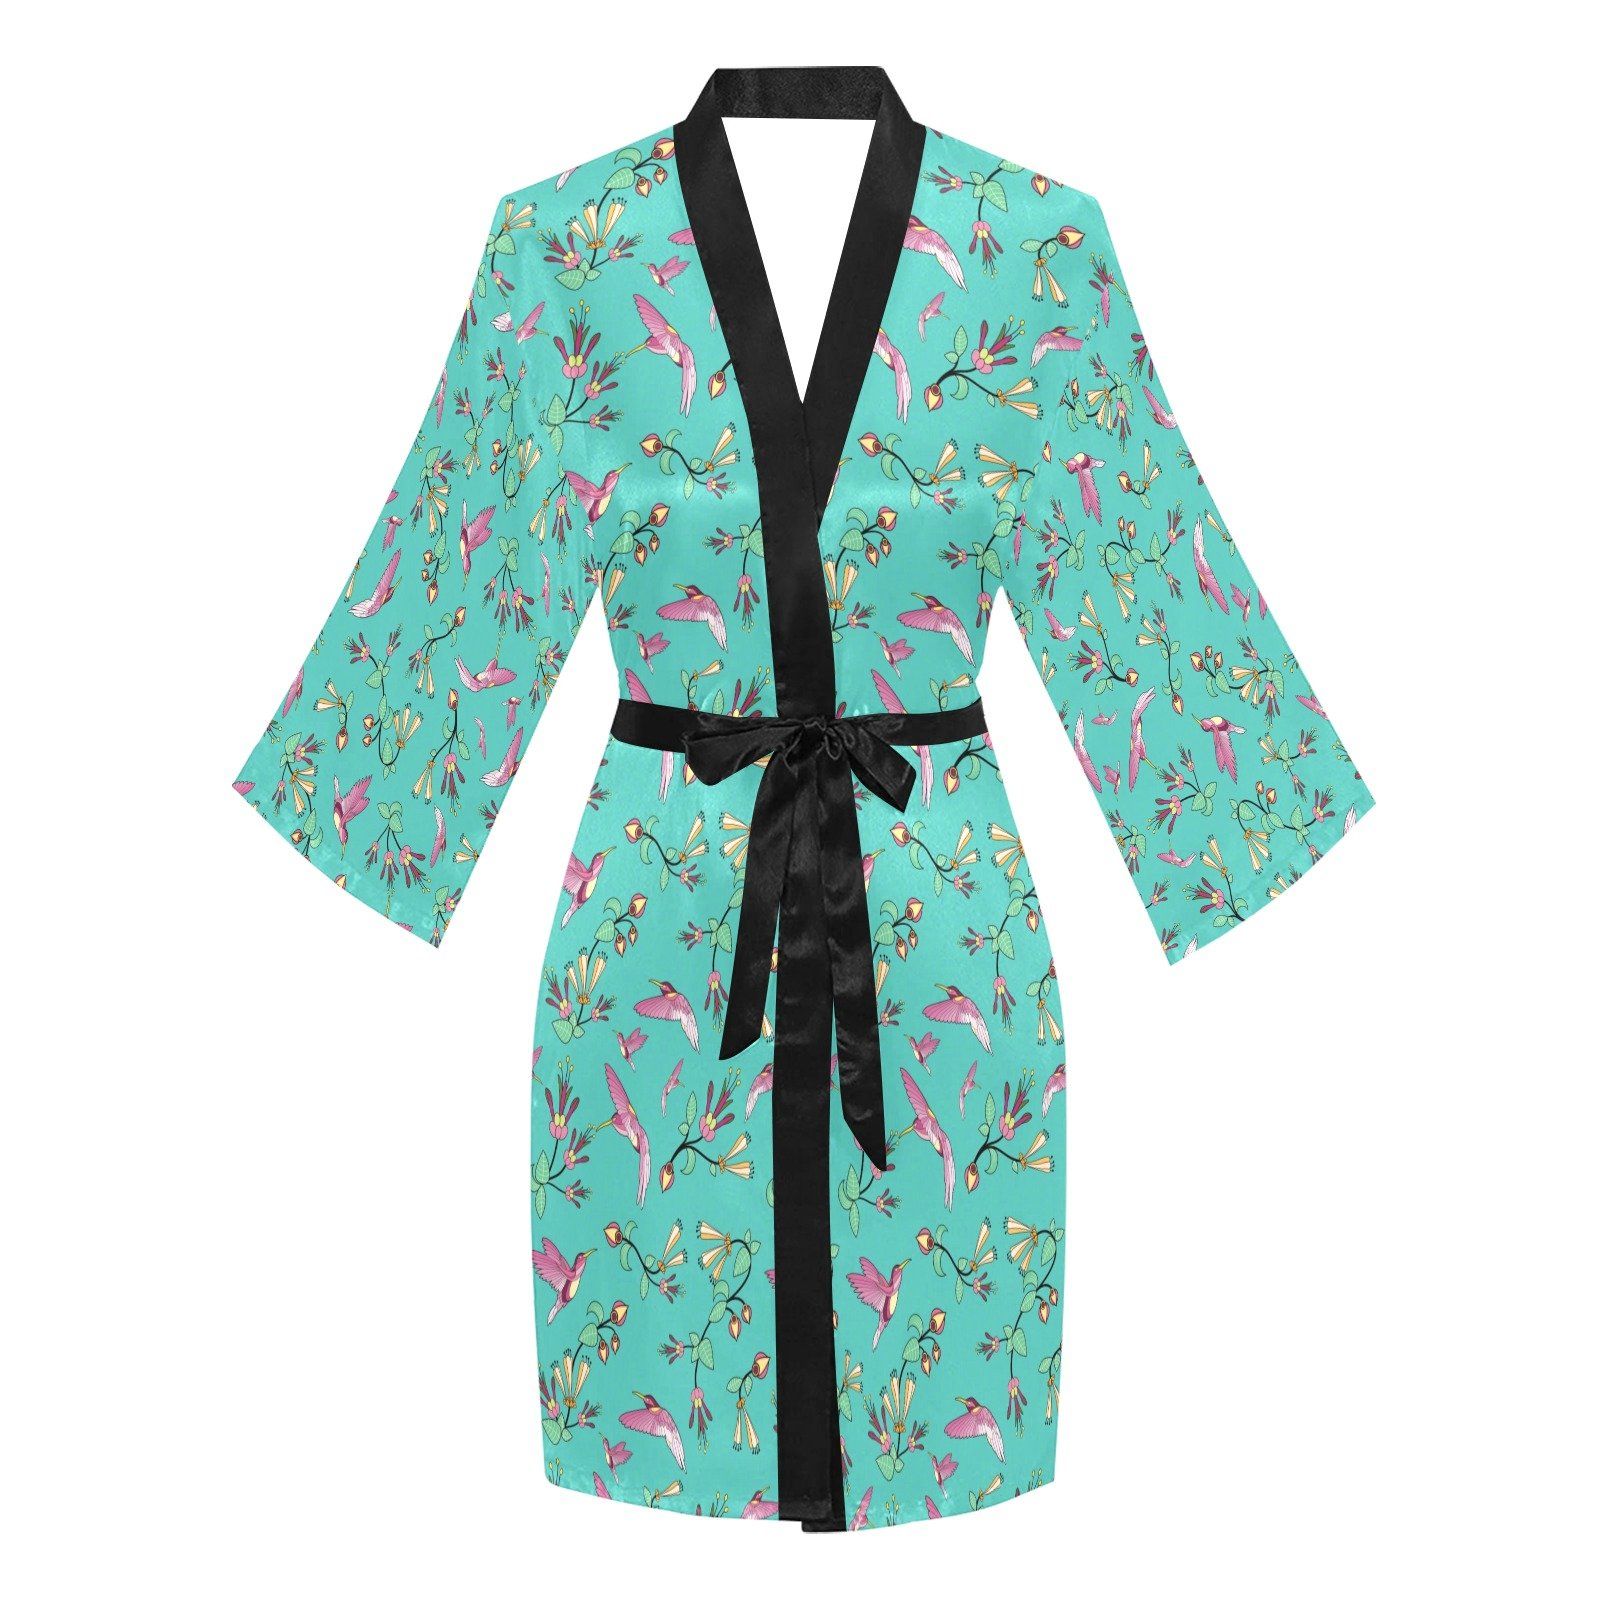 Swift Pastel Long Sleeve Kimono Robe Long Sleeve Kimono Robe e-joyer 